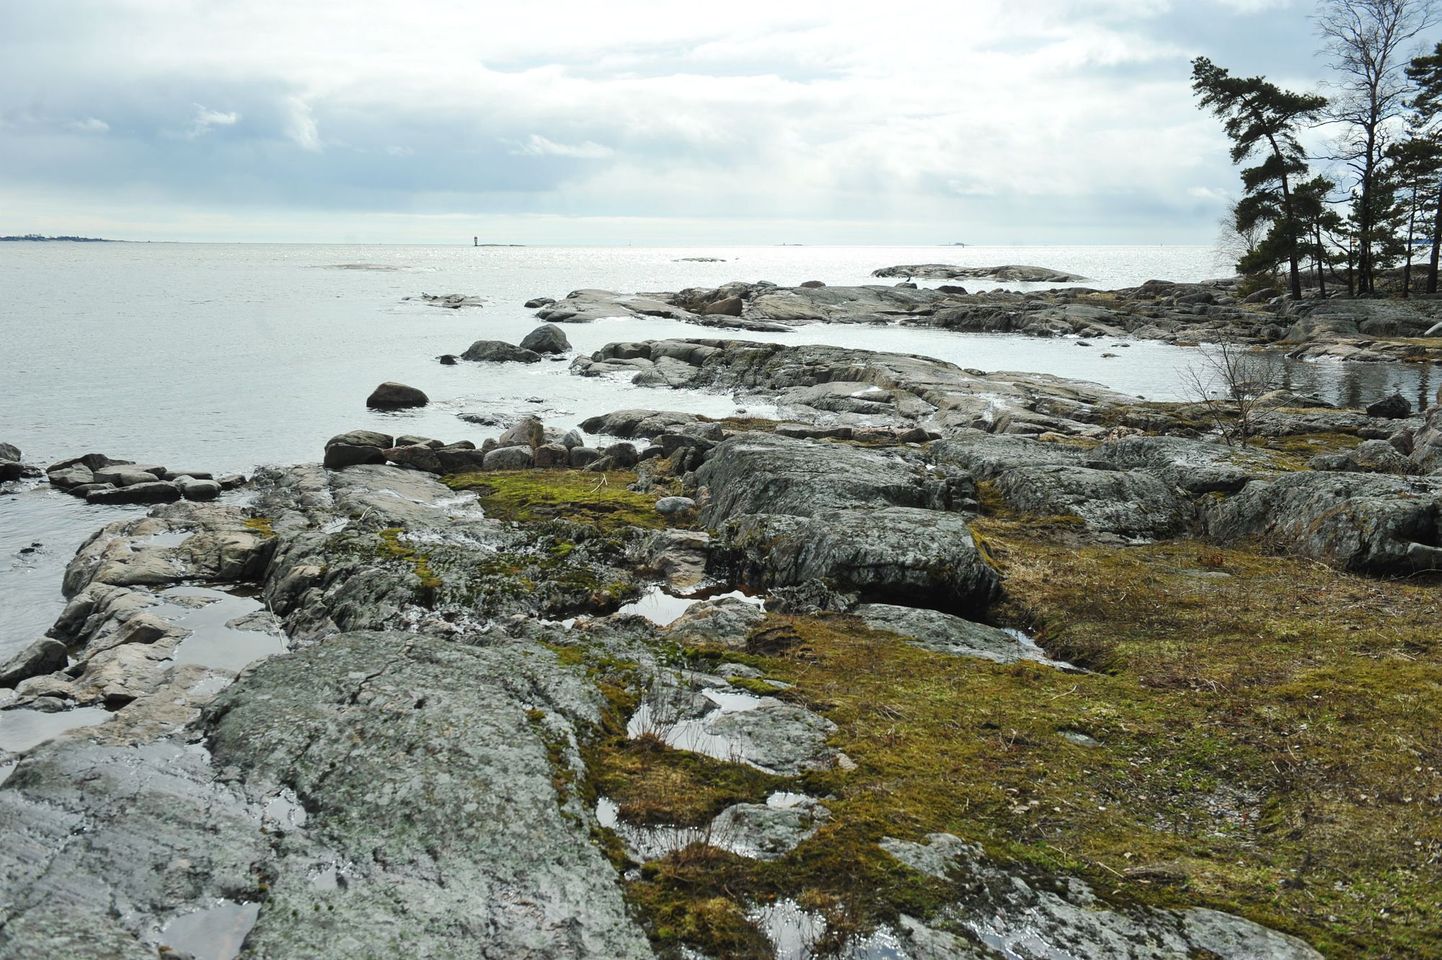 Helsingi lähedal asuval Pihlajasaarel elas Tallinki laevalt merre hüpanud mees kolm nädalat, enne kui endast märku andis.